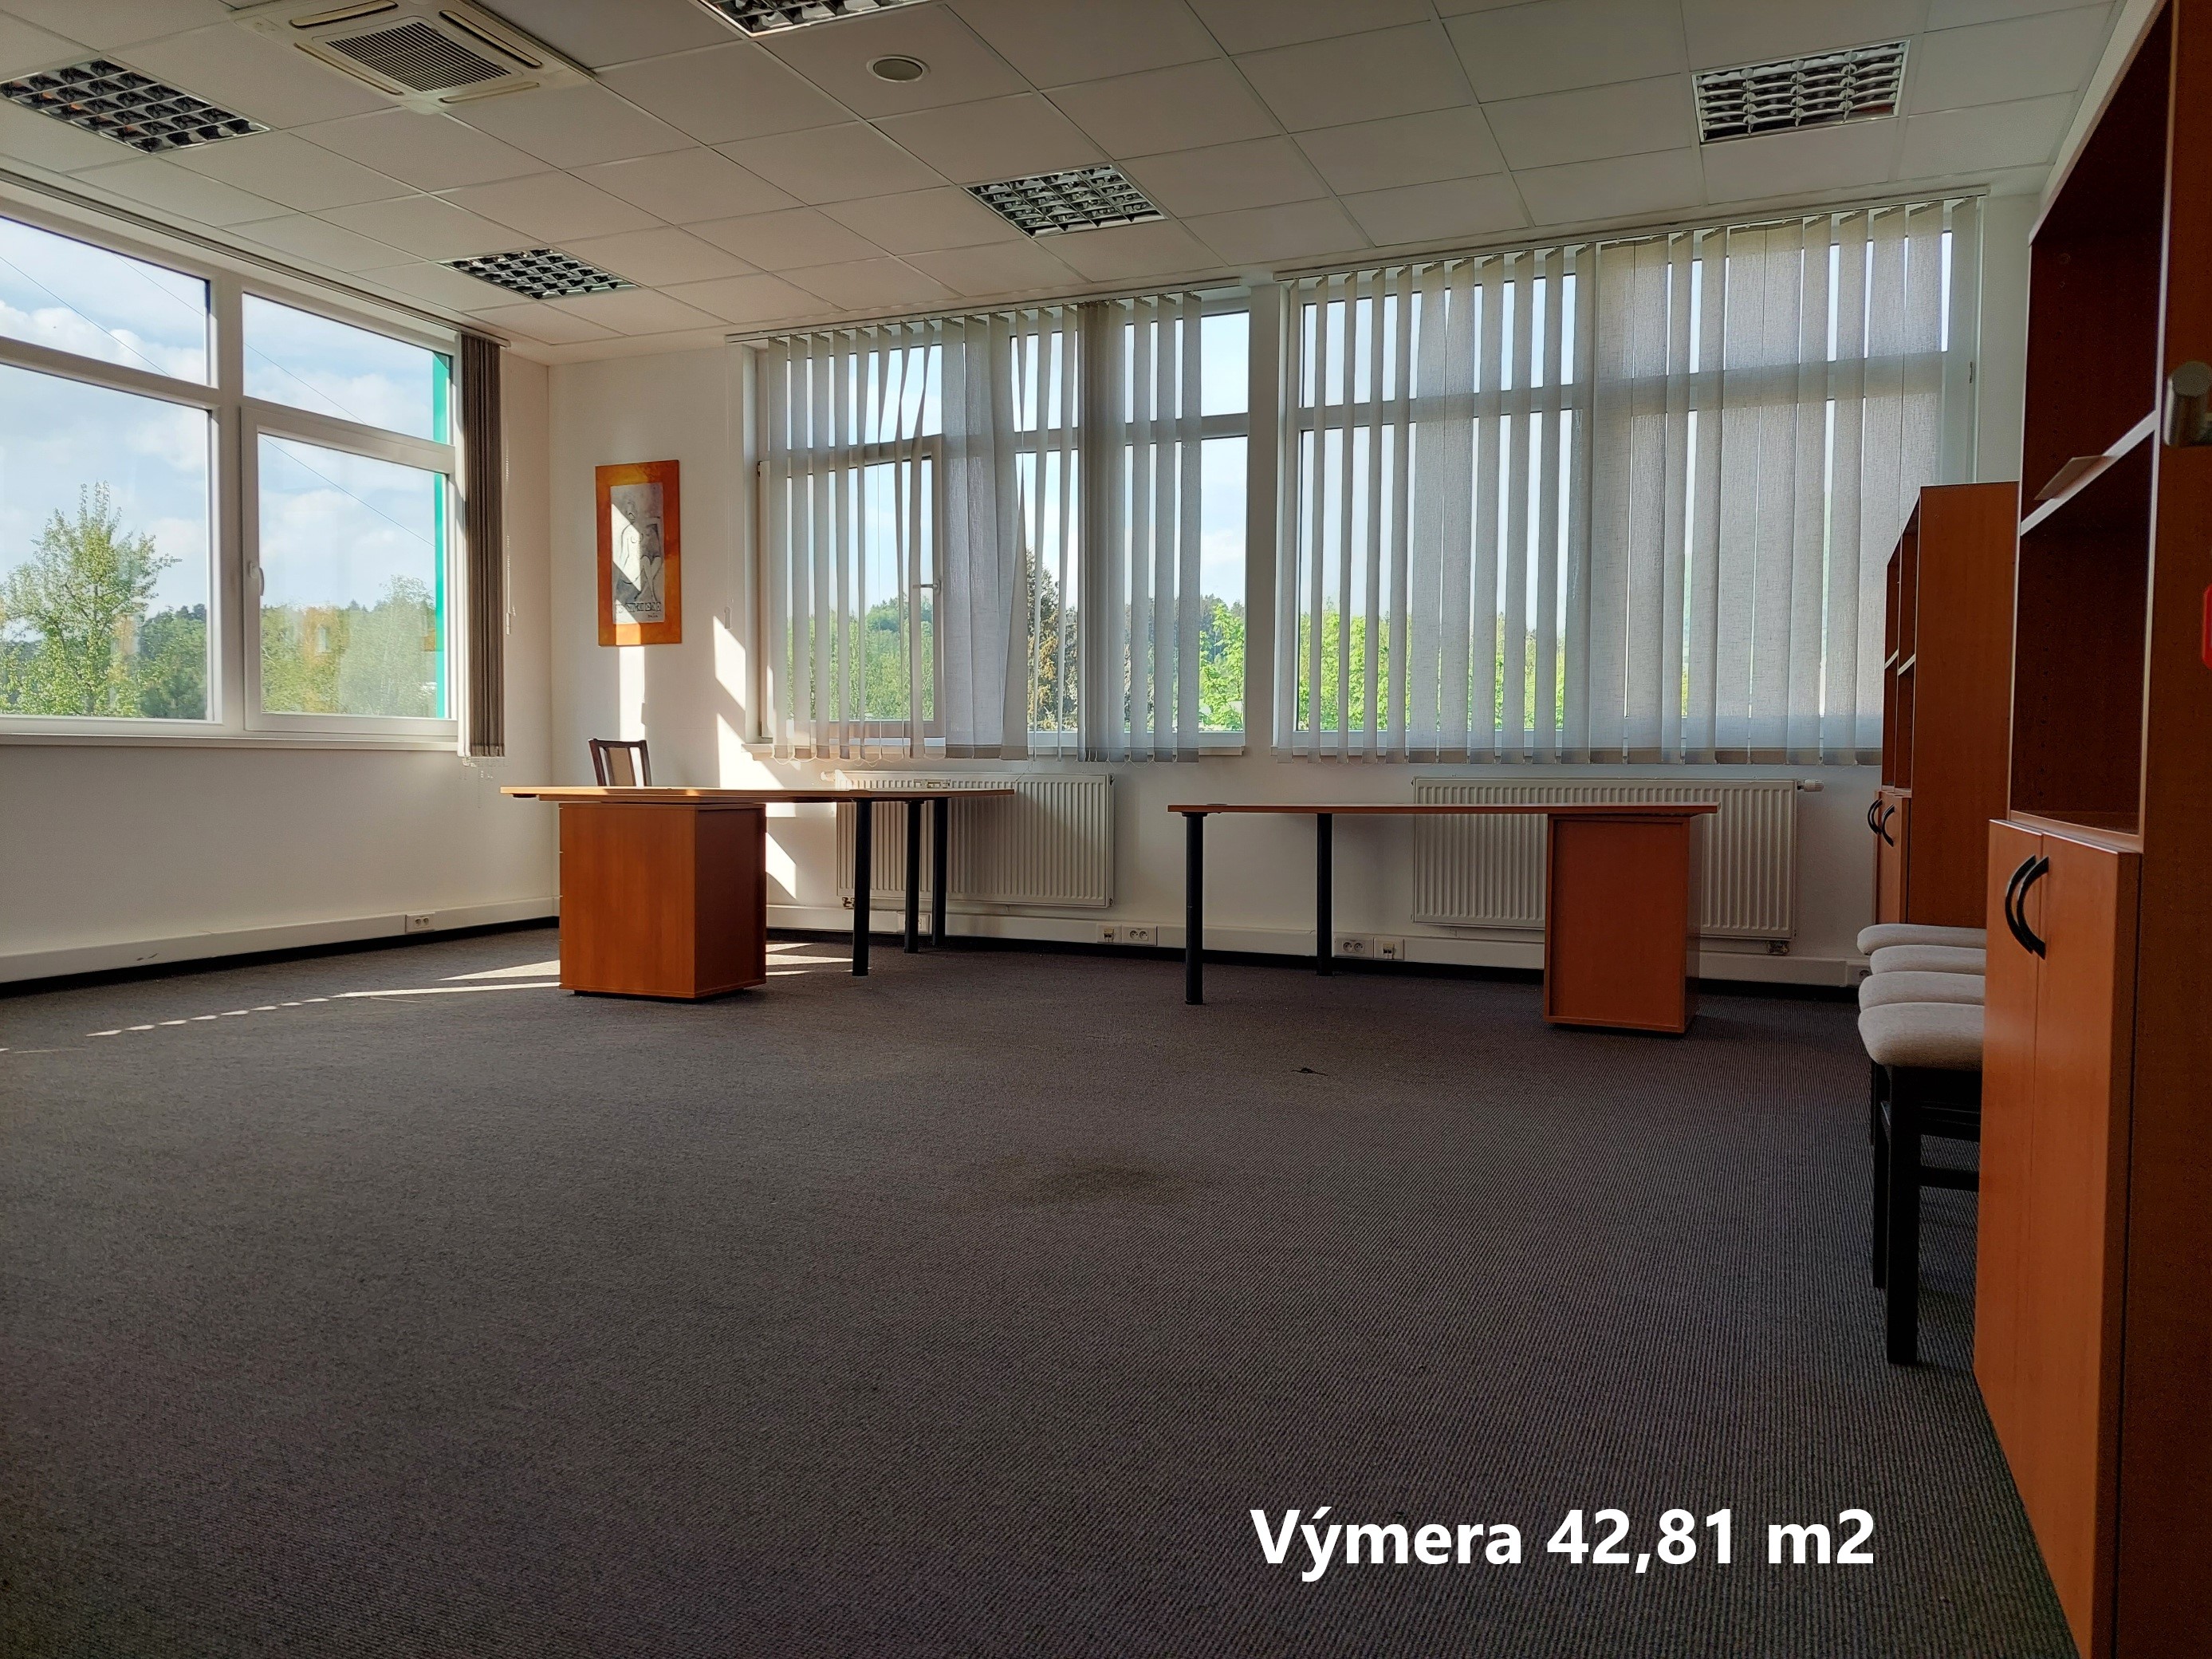 PRENÁJOM - Pov. Bystrica - kancelárske priestory: 8,50€/m2 bez DPH